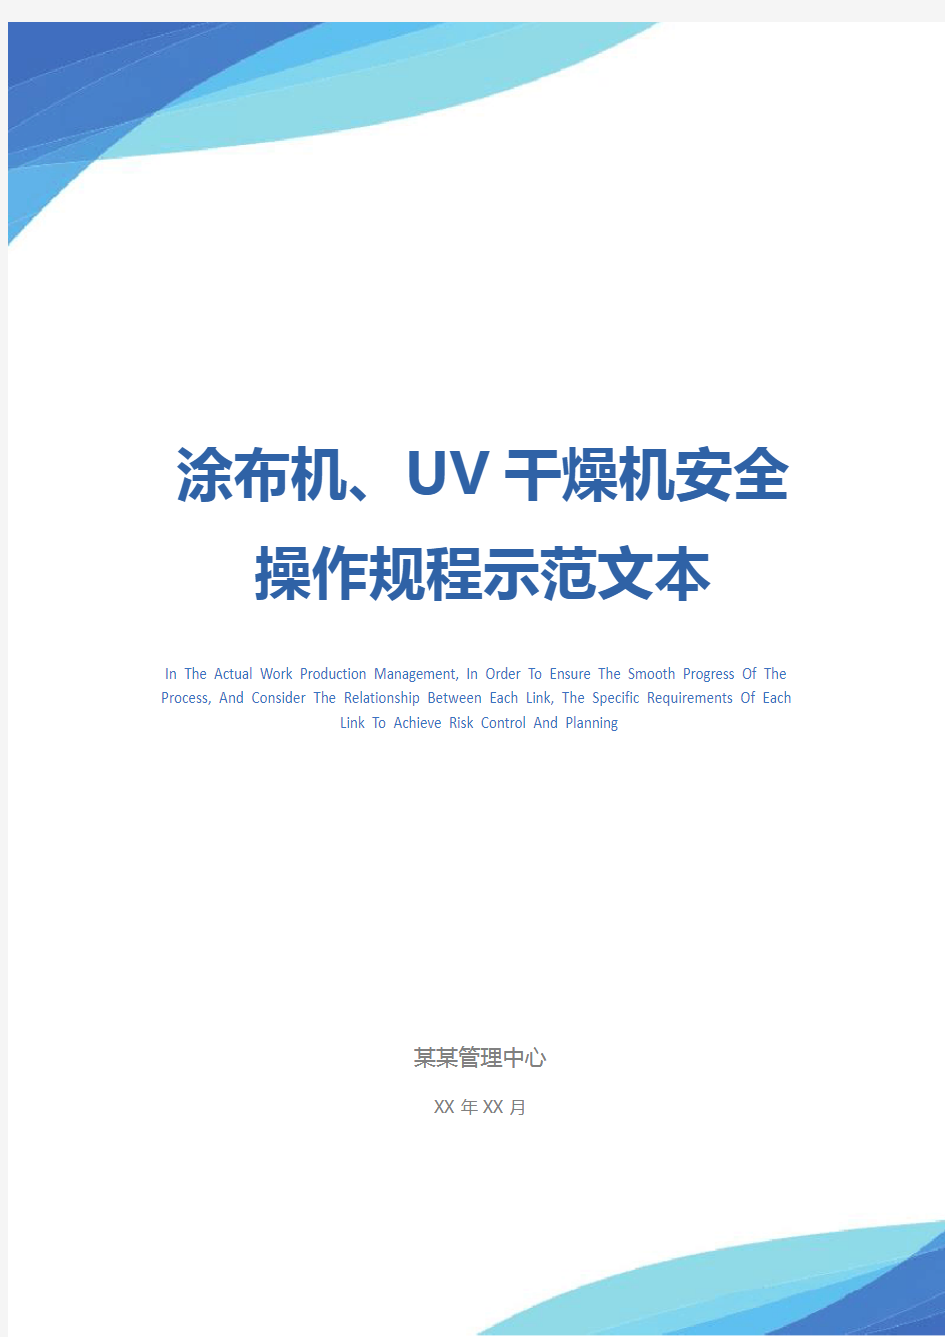 涂布机、UV干燥机安全操作规程示范文本